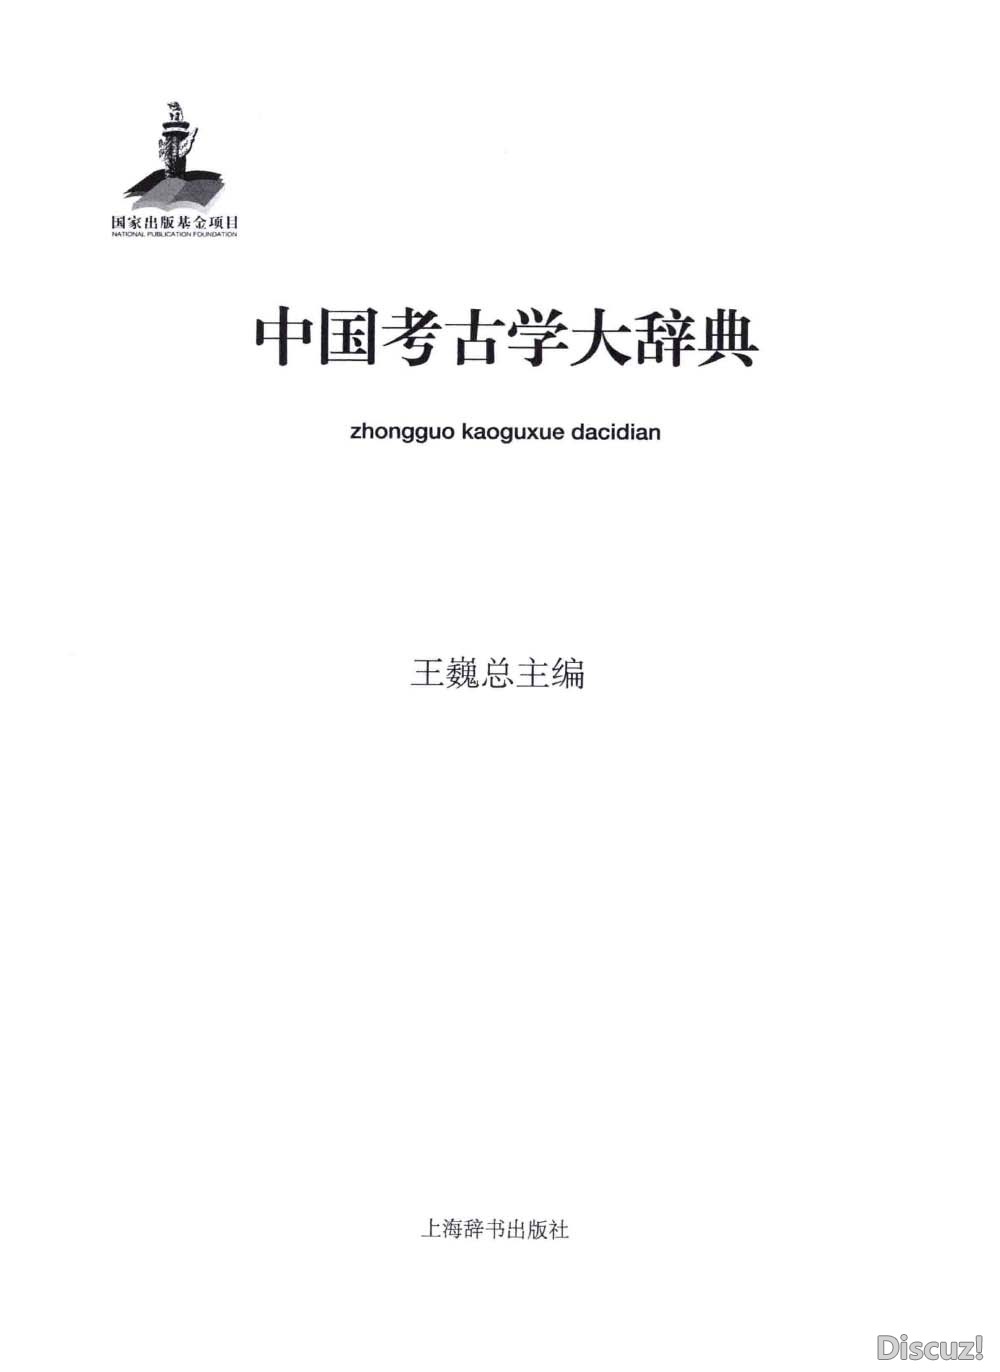 中国考古学大辞典_页面_03.jpg